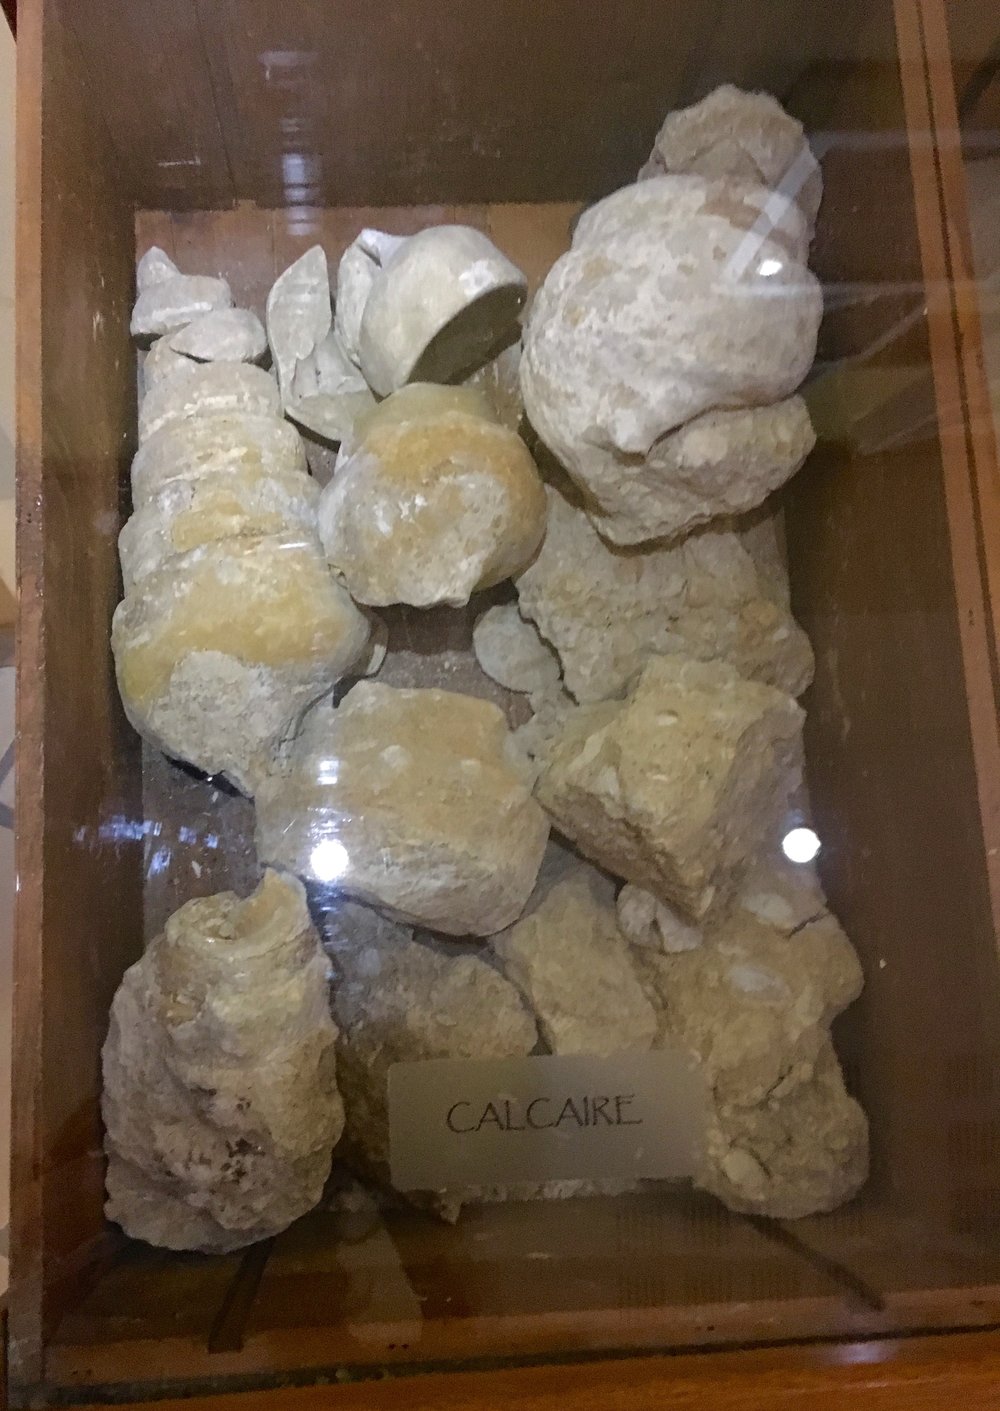 calcaire or limestone